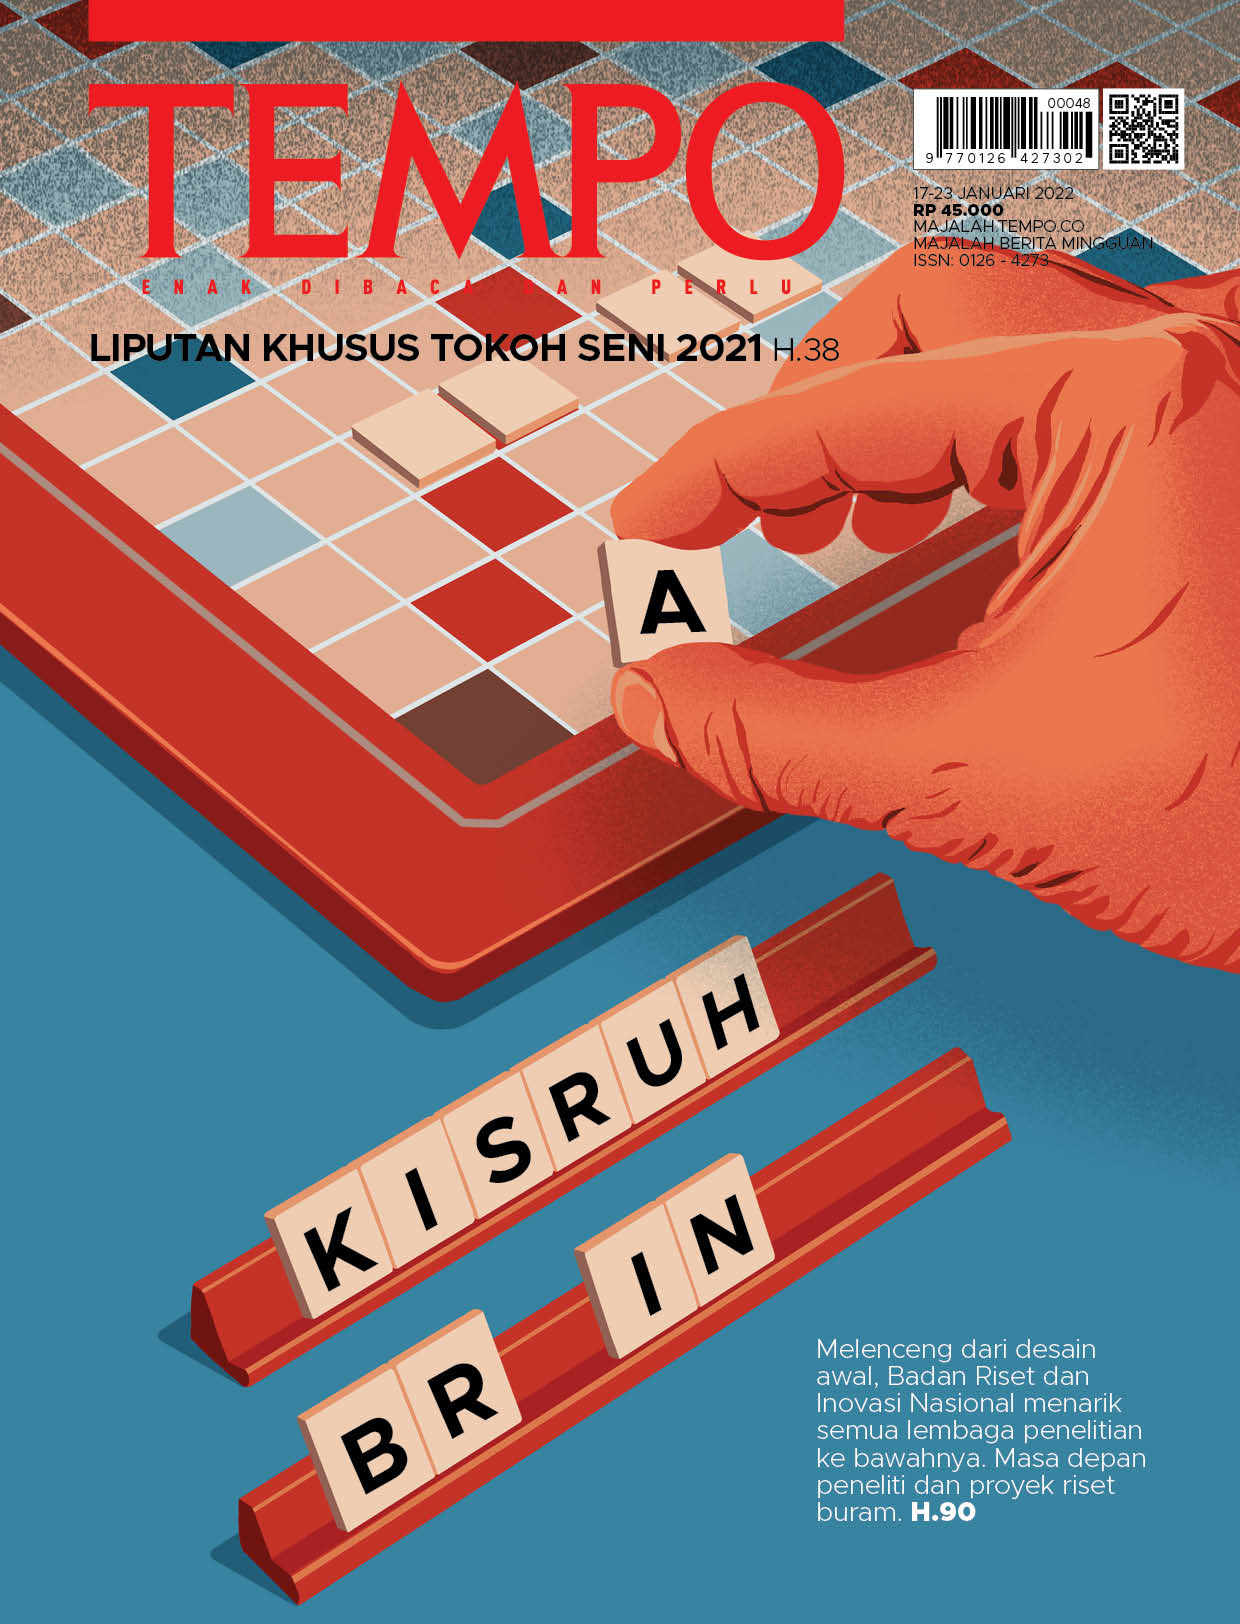 Cover Majalah Tempo - Edisi 15 Januari 2022 - Kisruh Brin